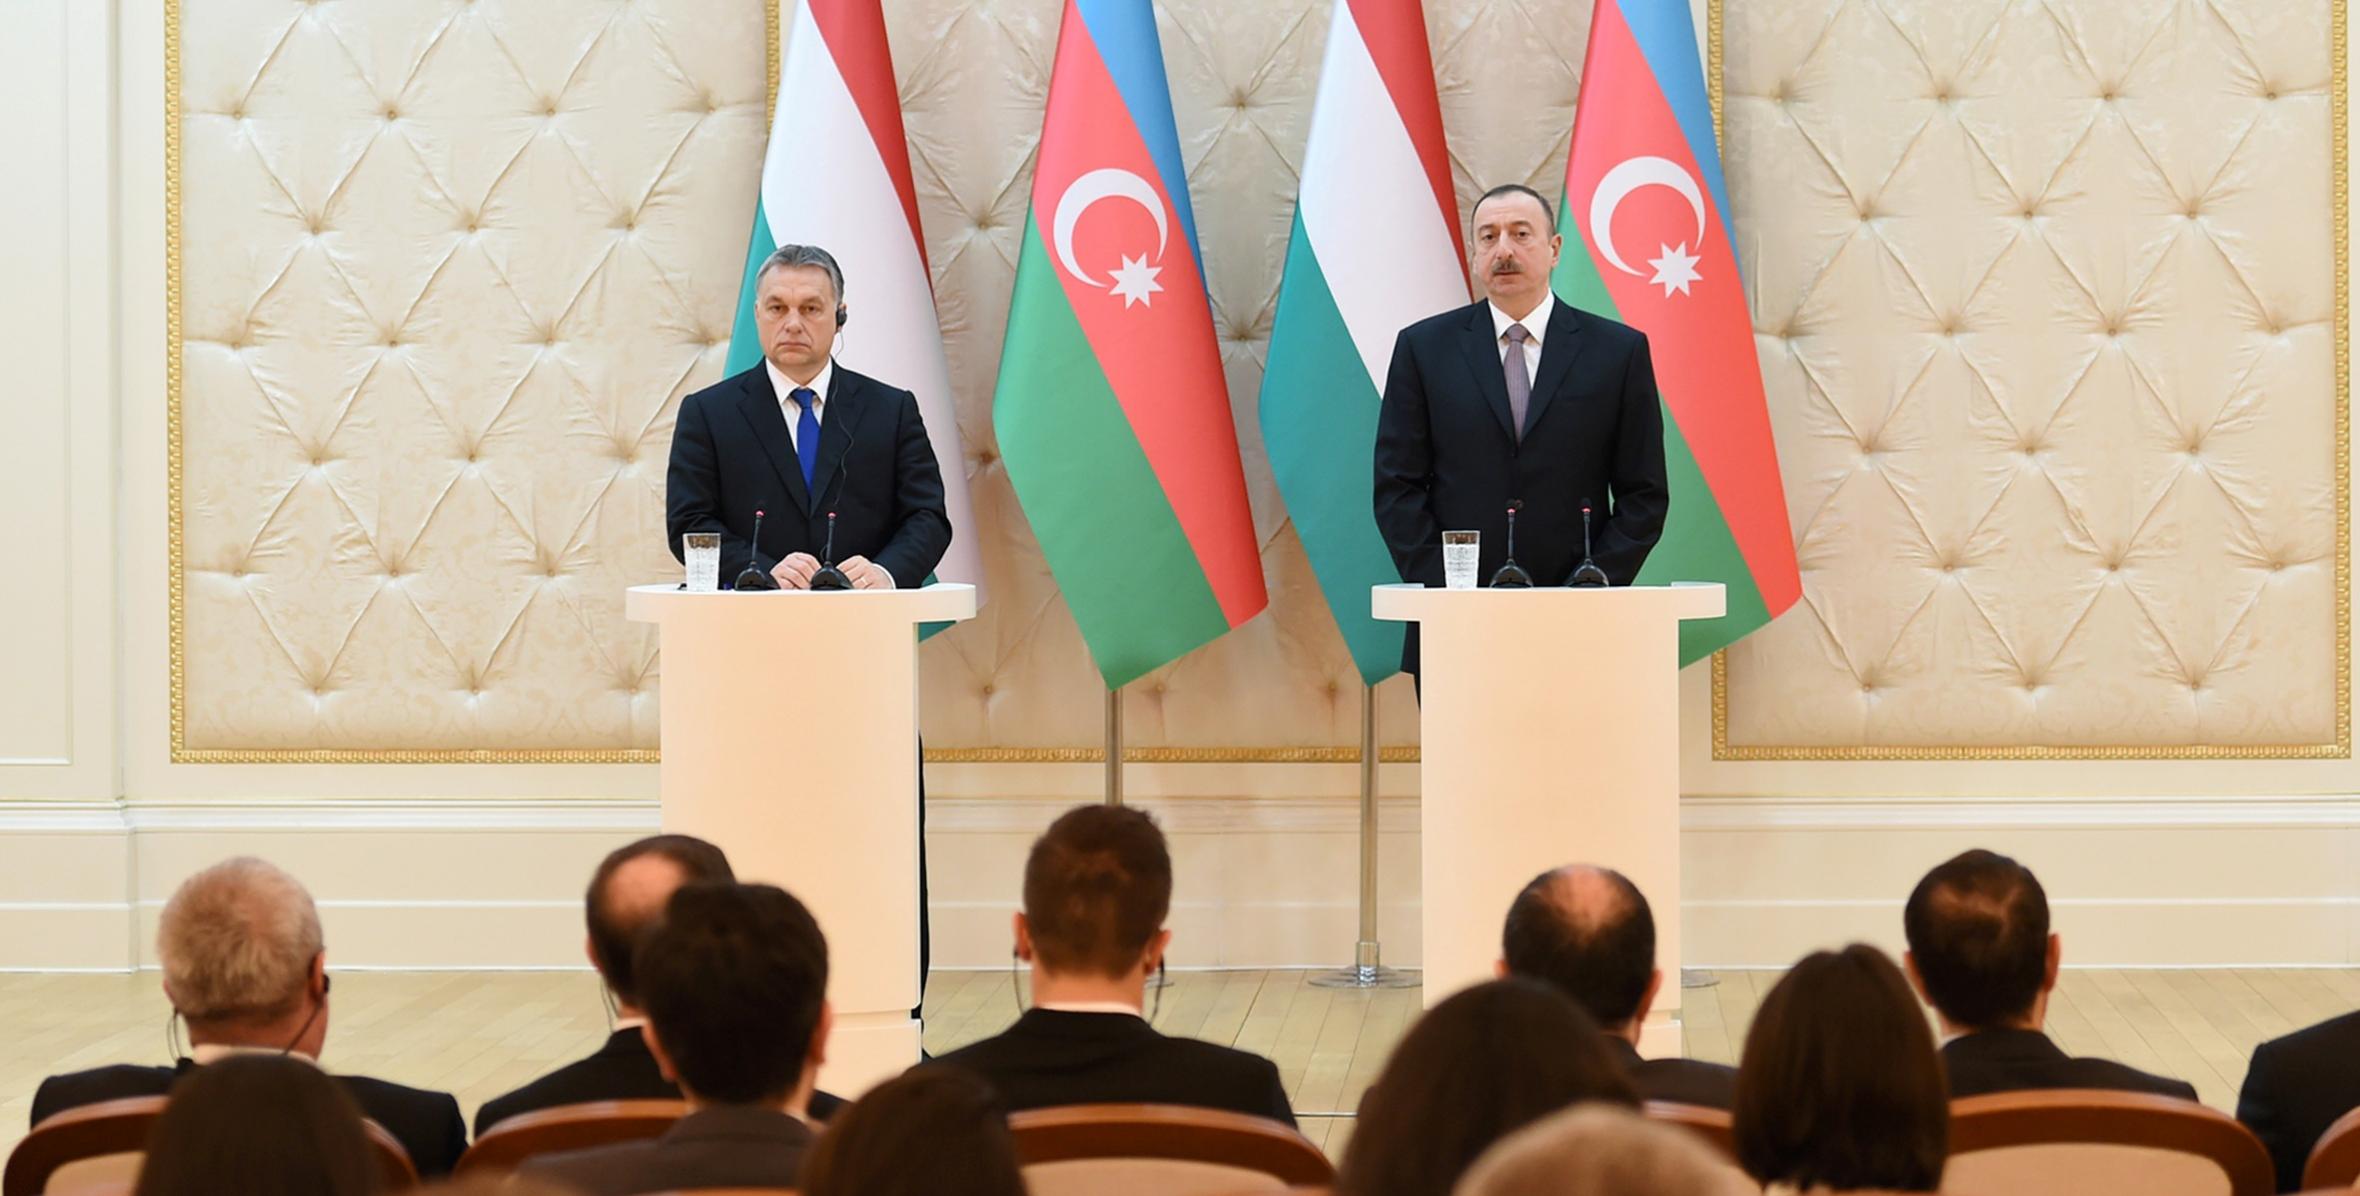 Ильхам Алиев и премьер-министр Виктор Орбан выступили с заявлениями для печати